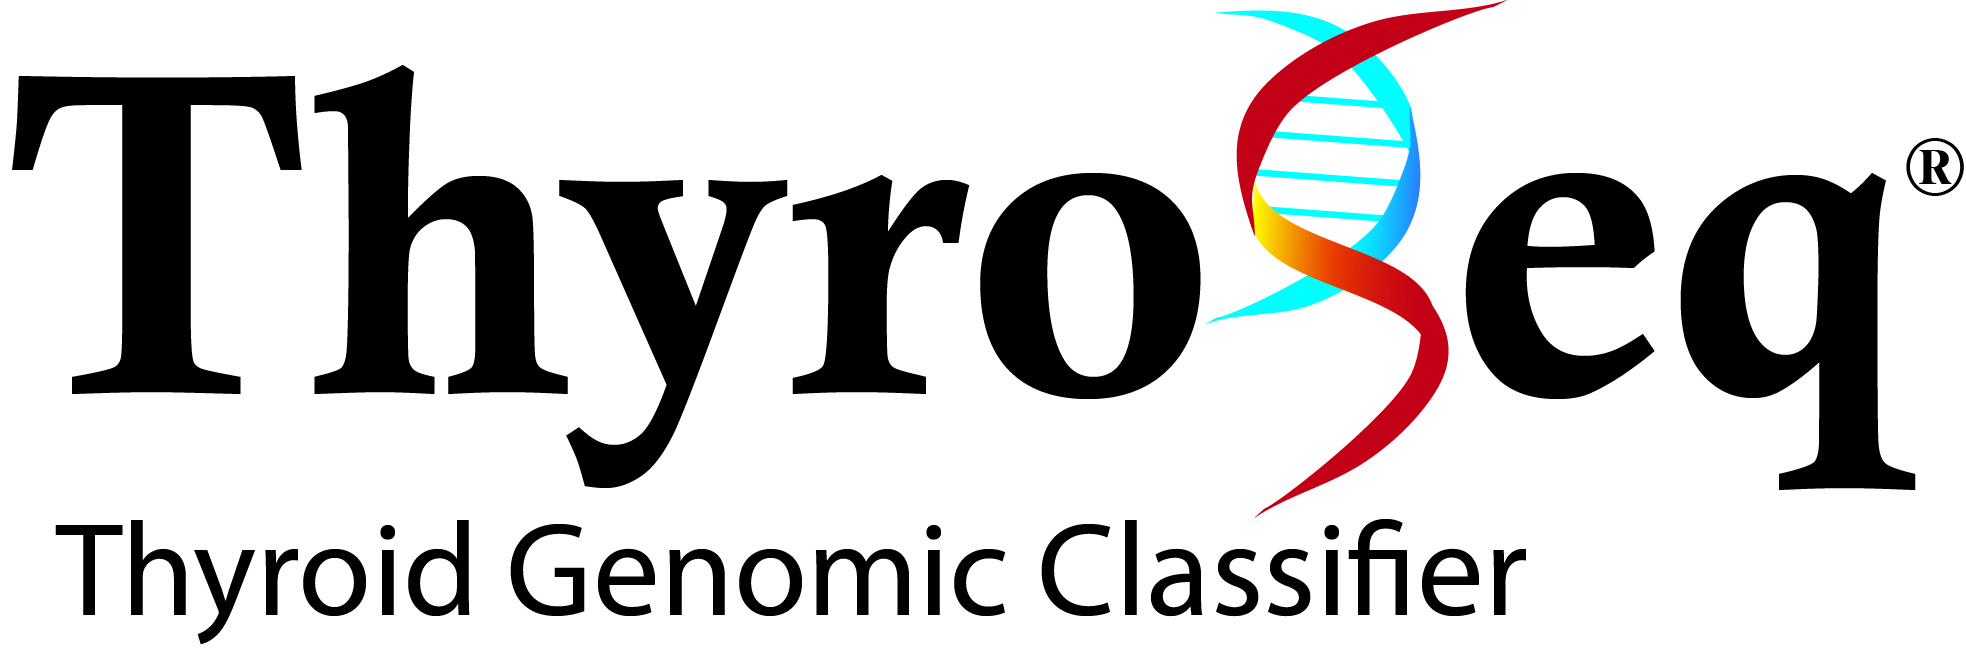 Thyroseq Logo